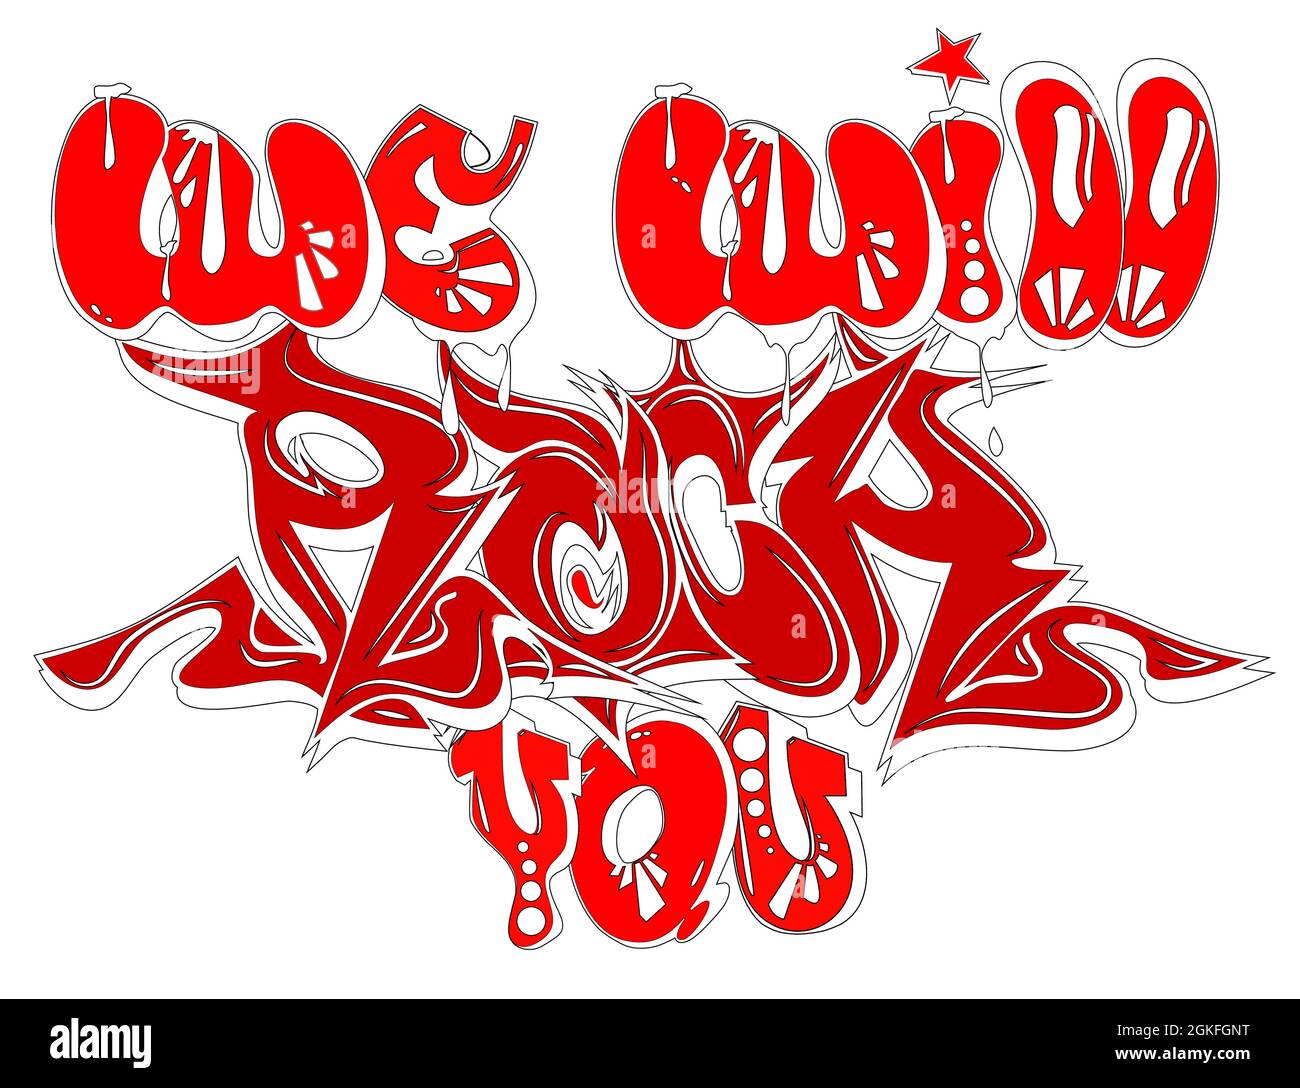 Handskizzierte Schriftzüge Wir werden Sie rocken. Gtafiti Street Art. Vorlage für Design, T-Shirt, Print, Poster, Web. EPS10-Vektorgrafik mit Ebenen iso Stock Vektor